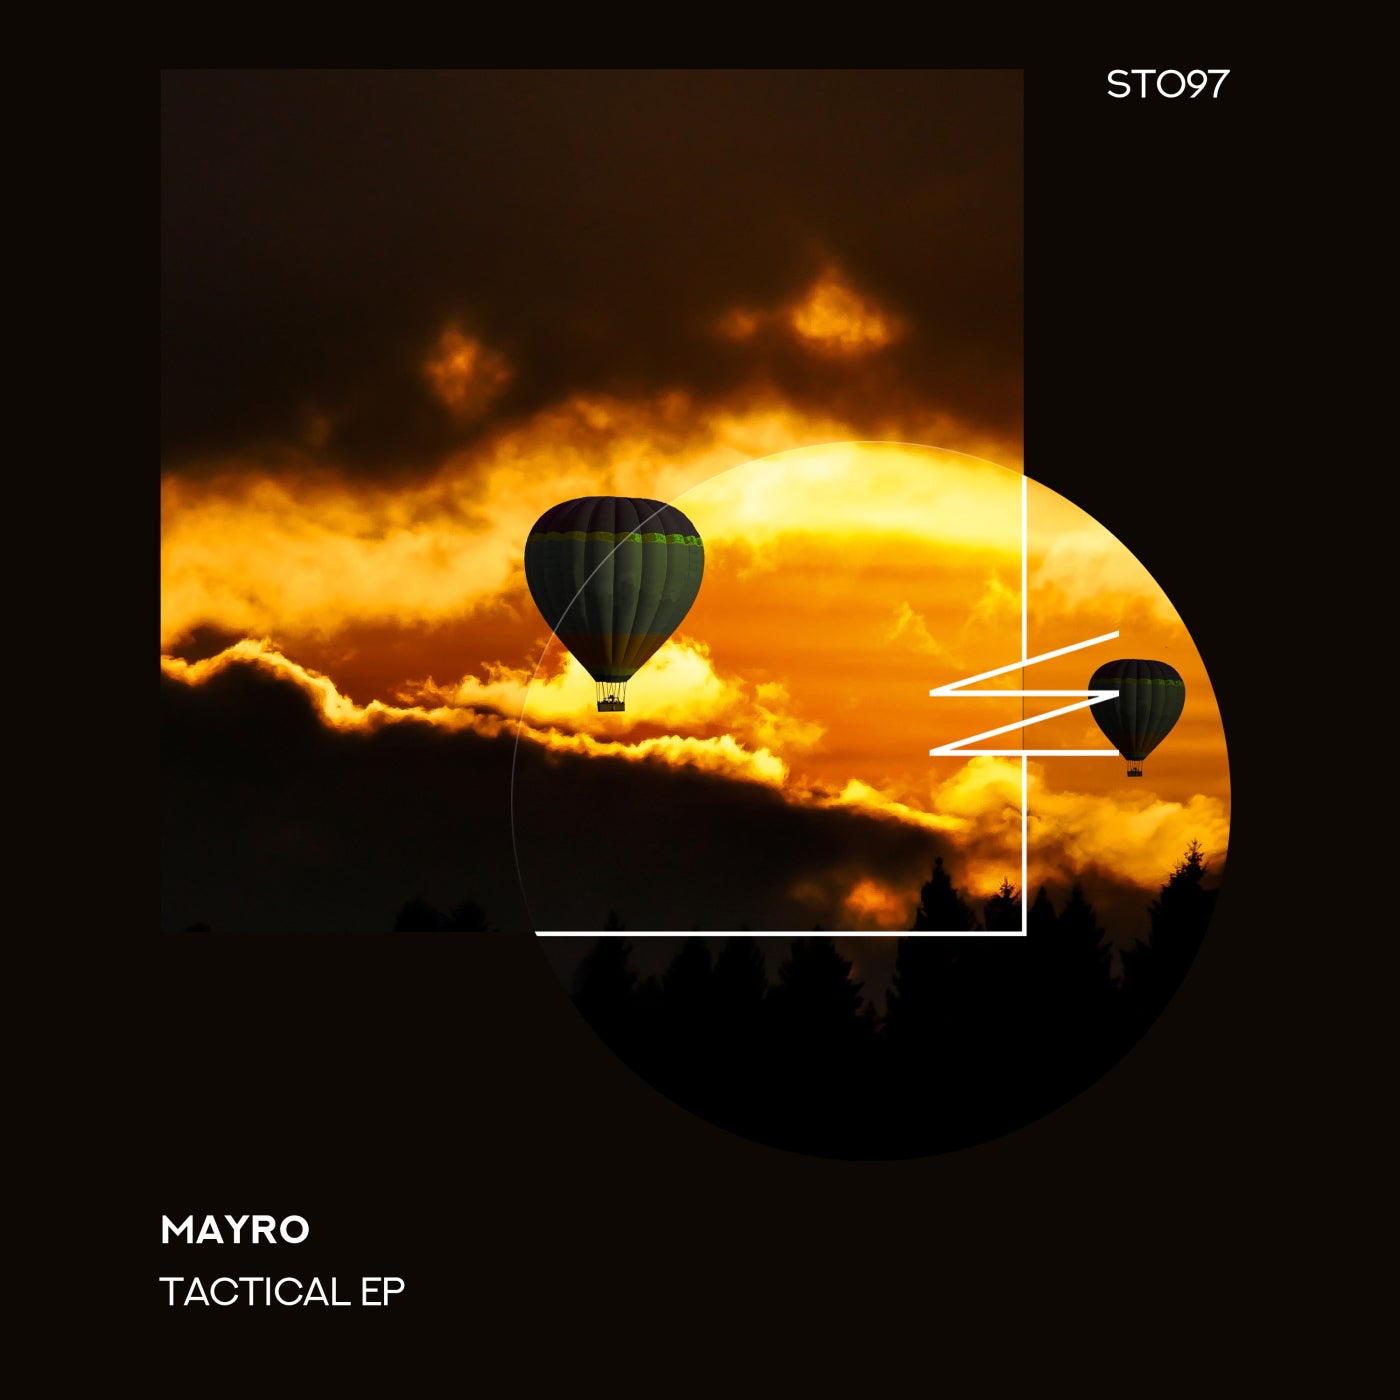 Mayro - Tactical EP [ST097]